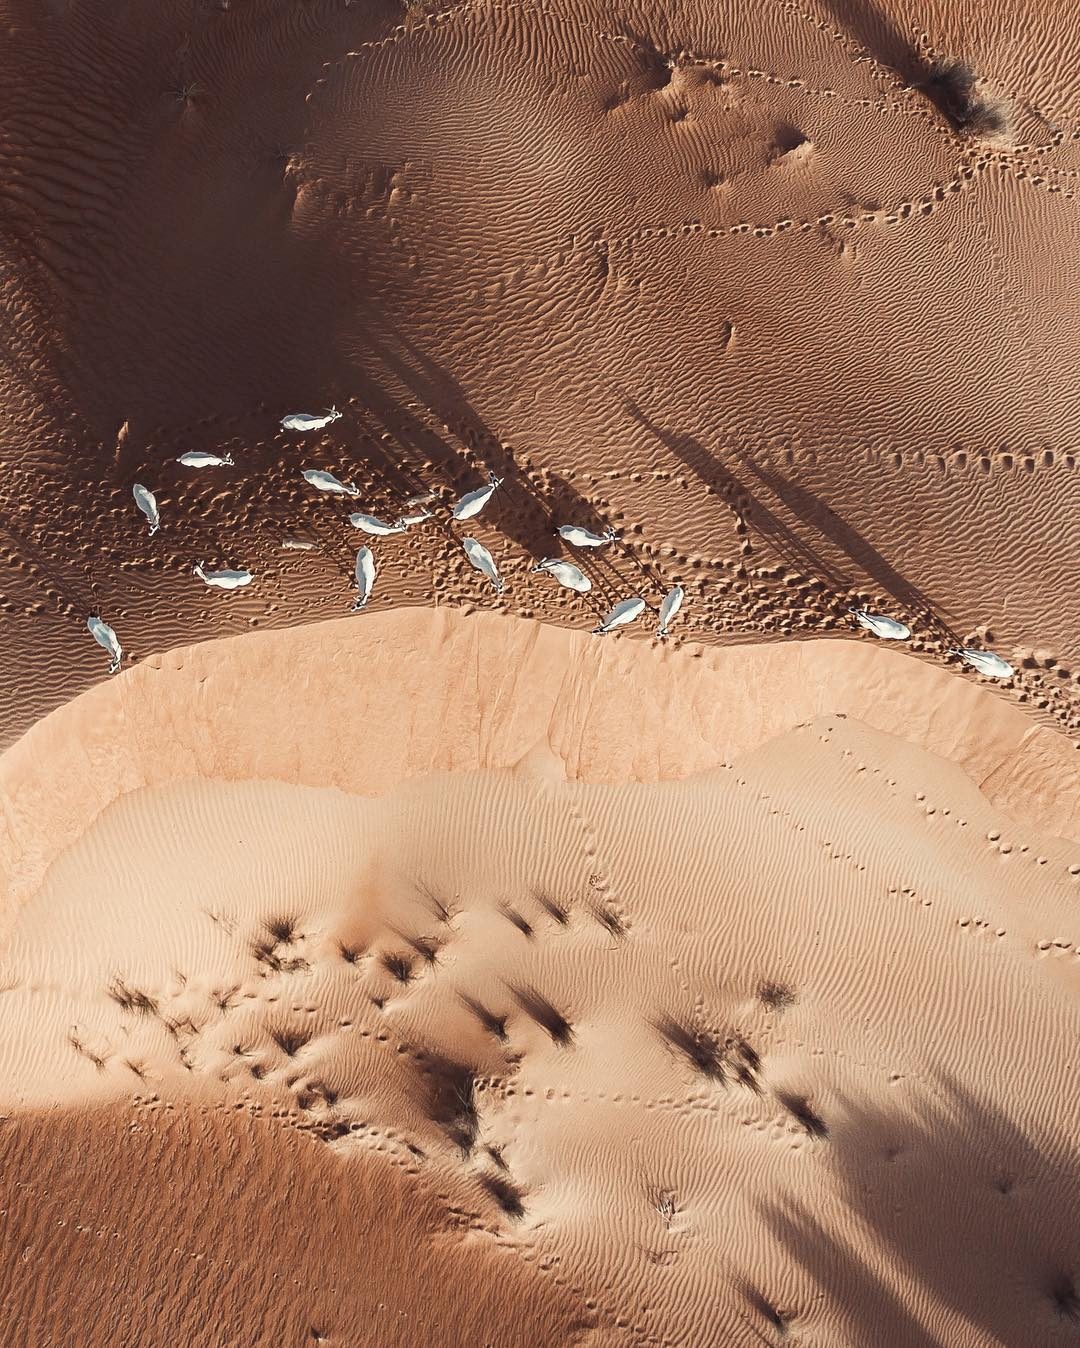 Scatti surreali del deserto arabo